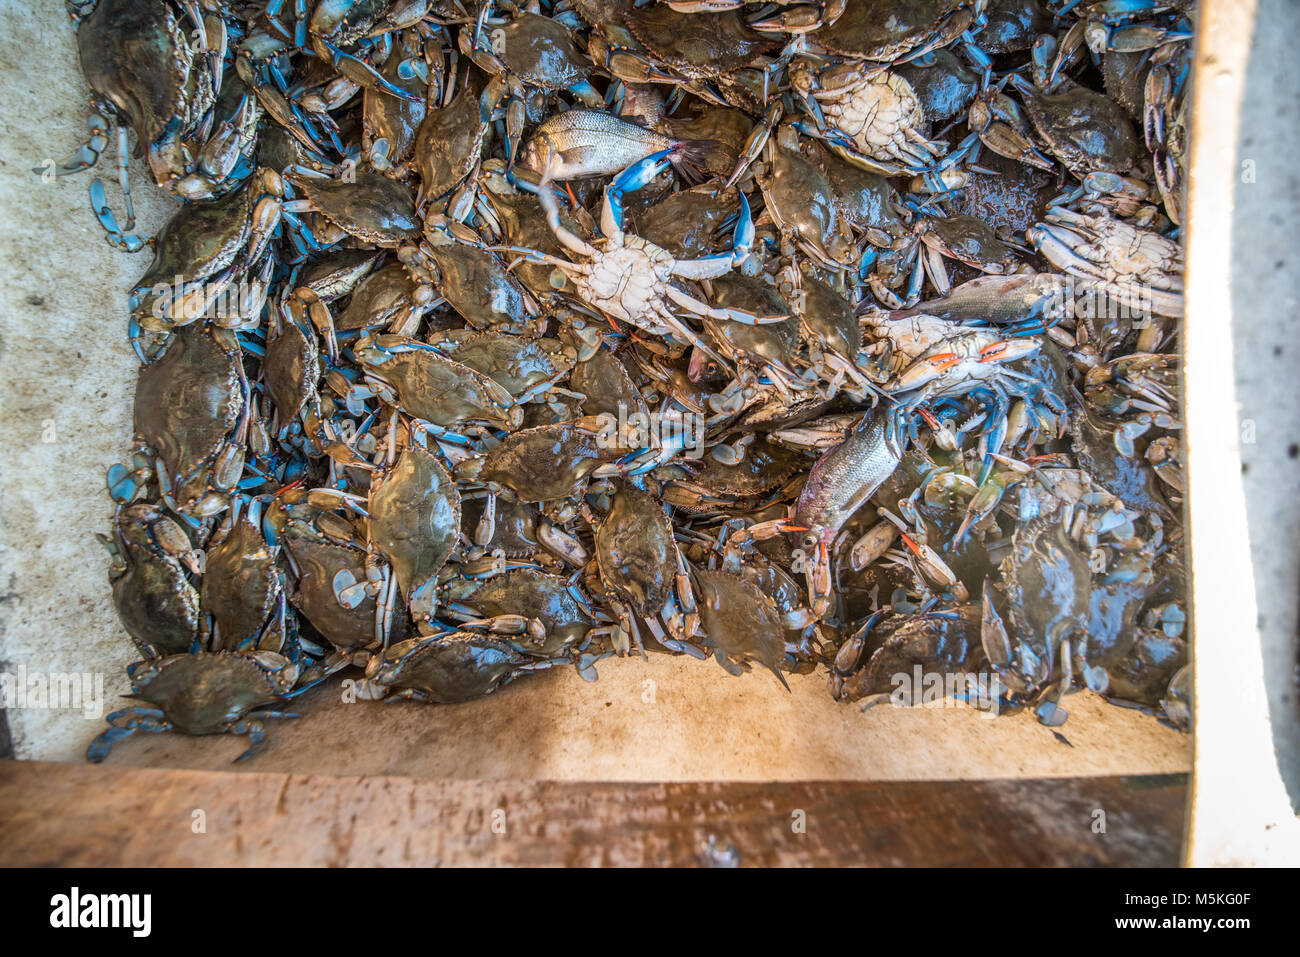 Bucket full of freshly caught Chesapeake blue crab, Dundalk, Maryland. Stock Photo